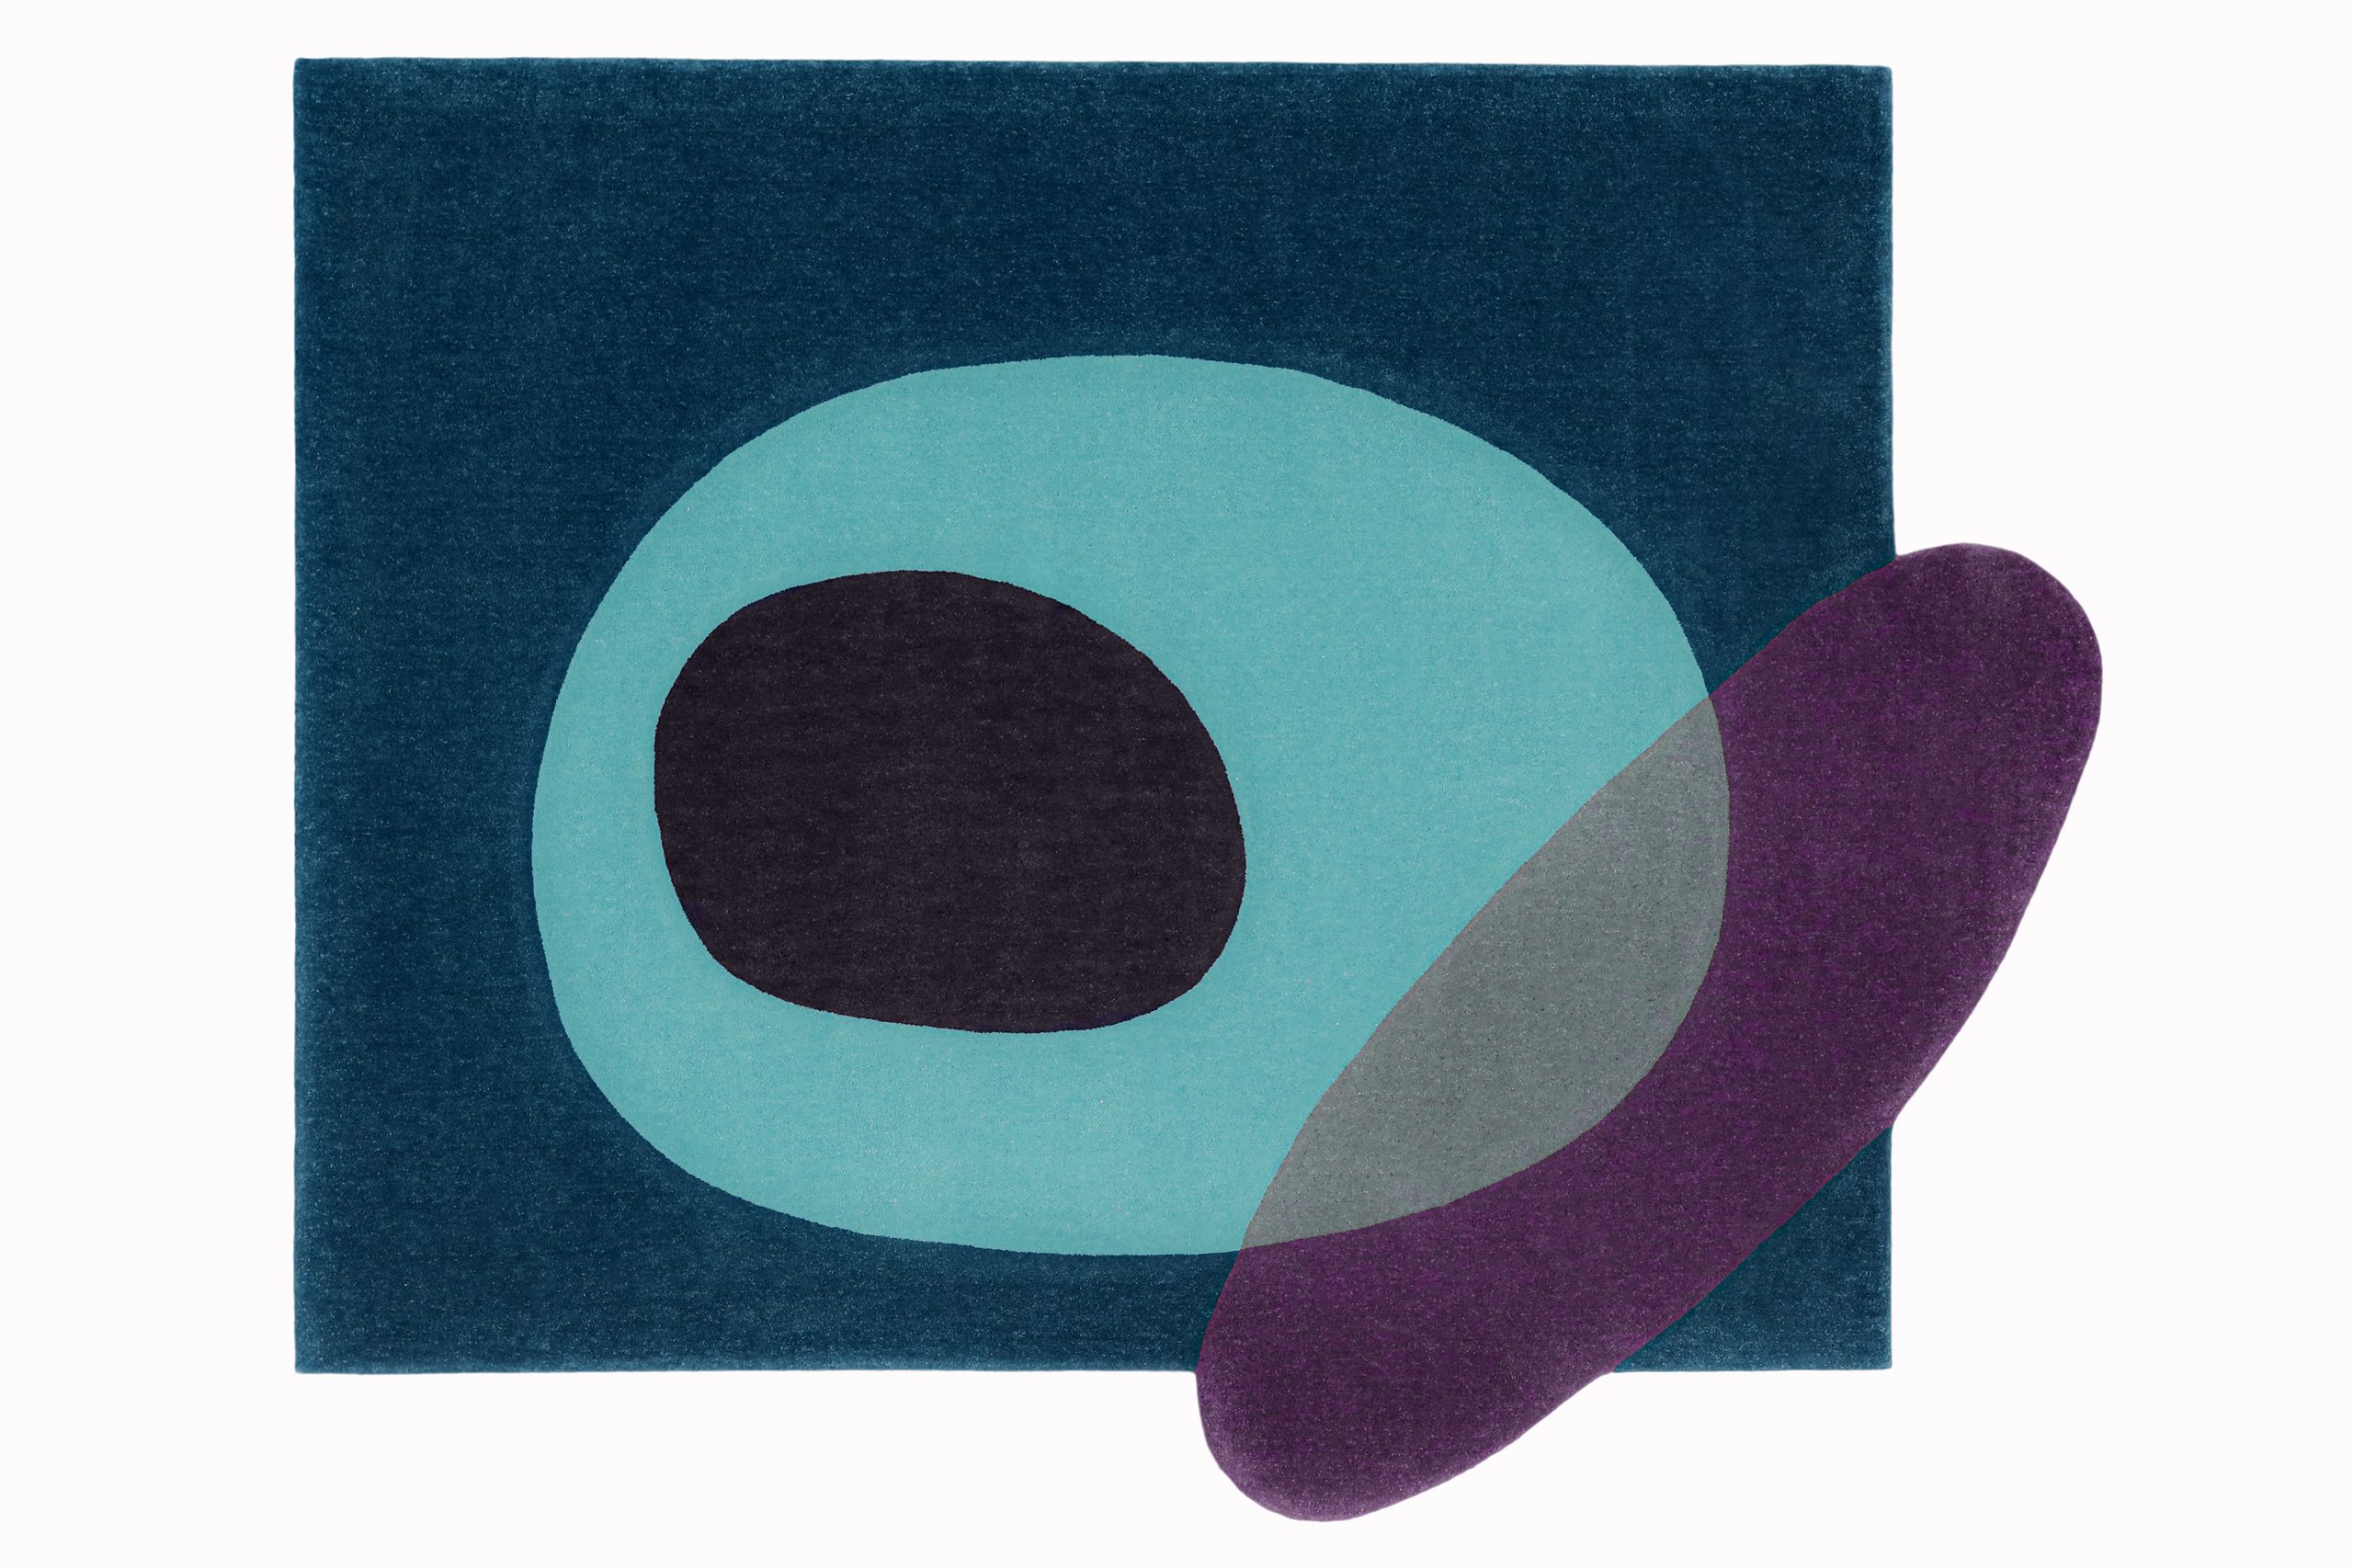 Escritório _Ohtake assina linha de tapetes Meandros para a Punto e Filo - tapere quadrado azul escuro, com desenho redondo em seu interior azul claro e roxo